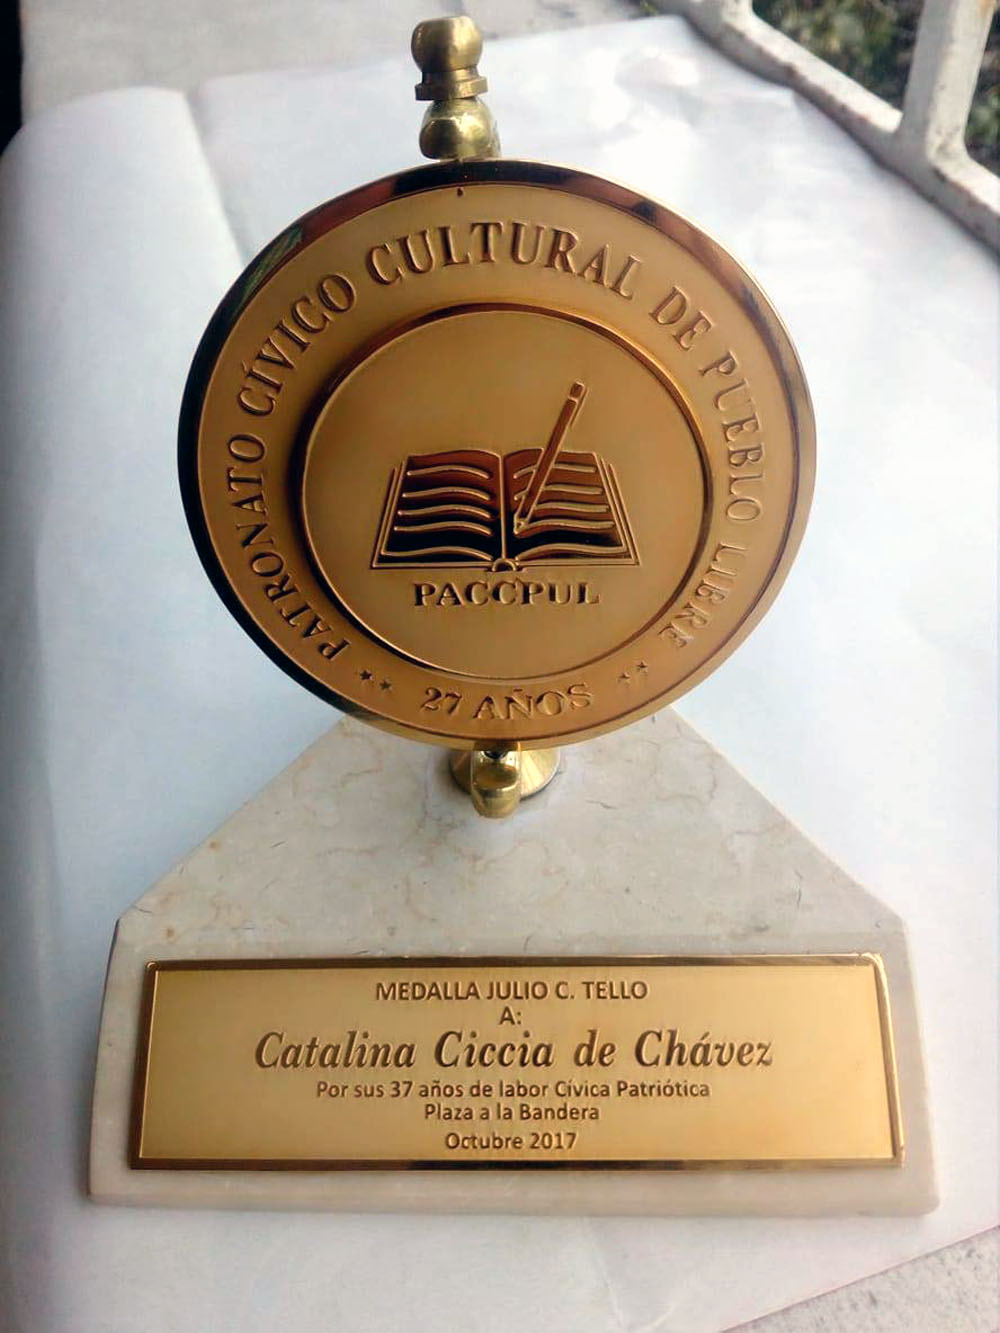 RECONOCIMIENTO A CATALINA CICCIA DE CHÁVEZ Y PRESENTACION DE SU LIBRO EL ALTAR DE LA PATRIA